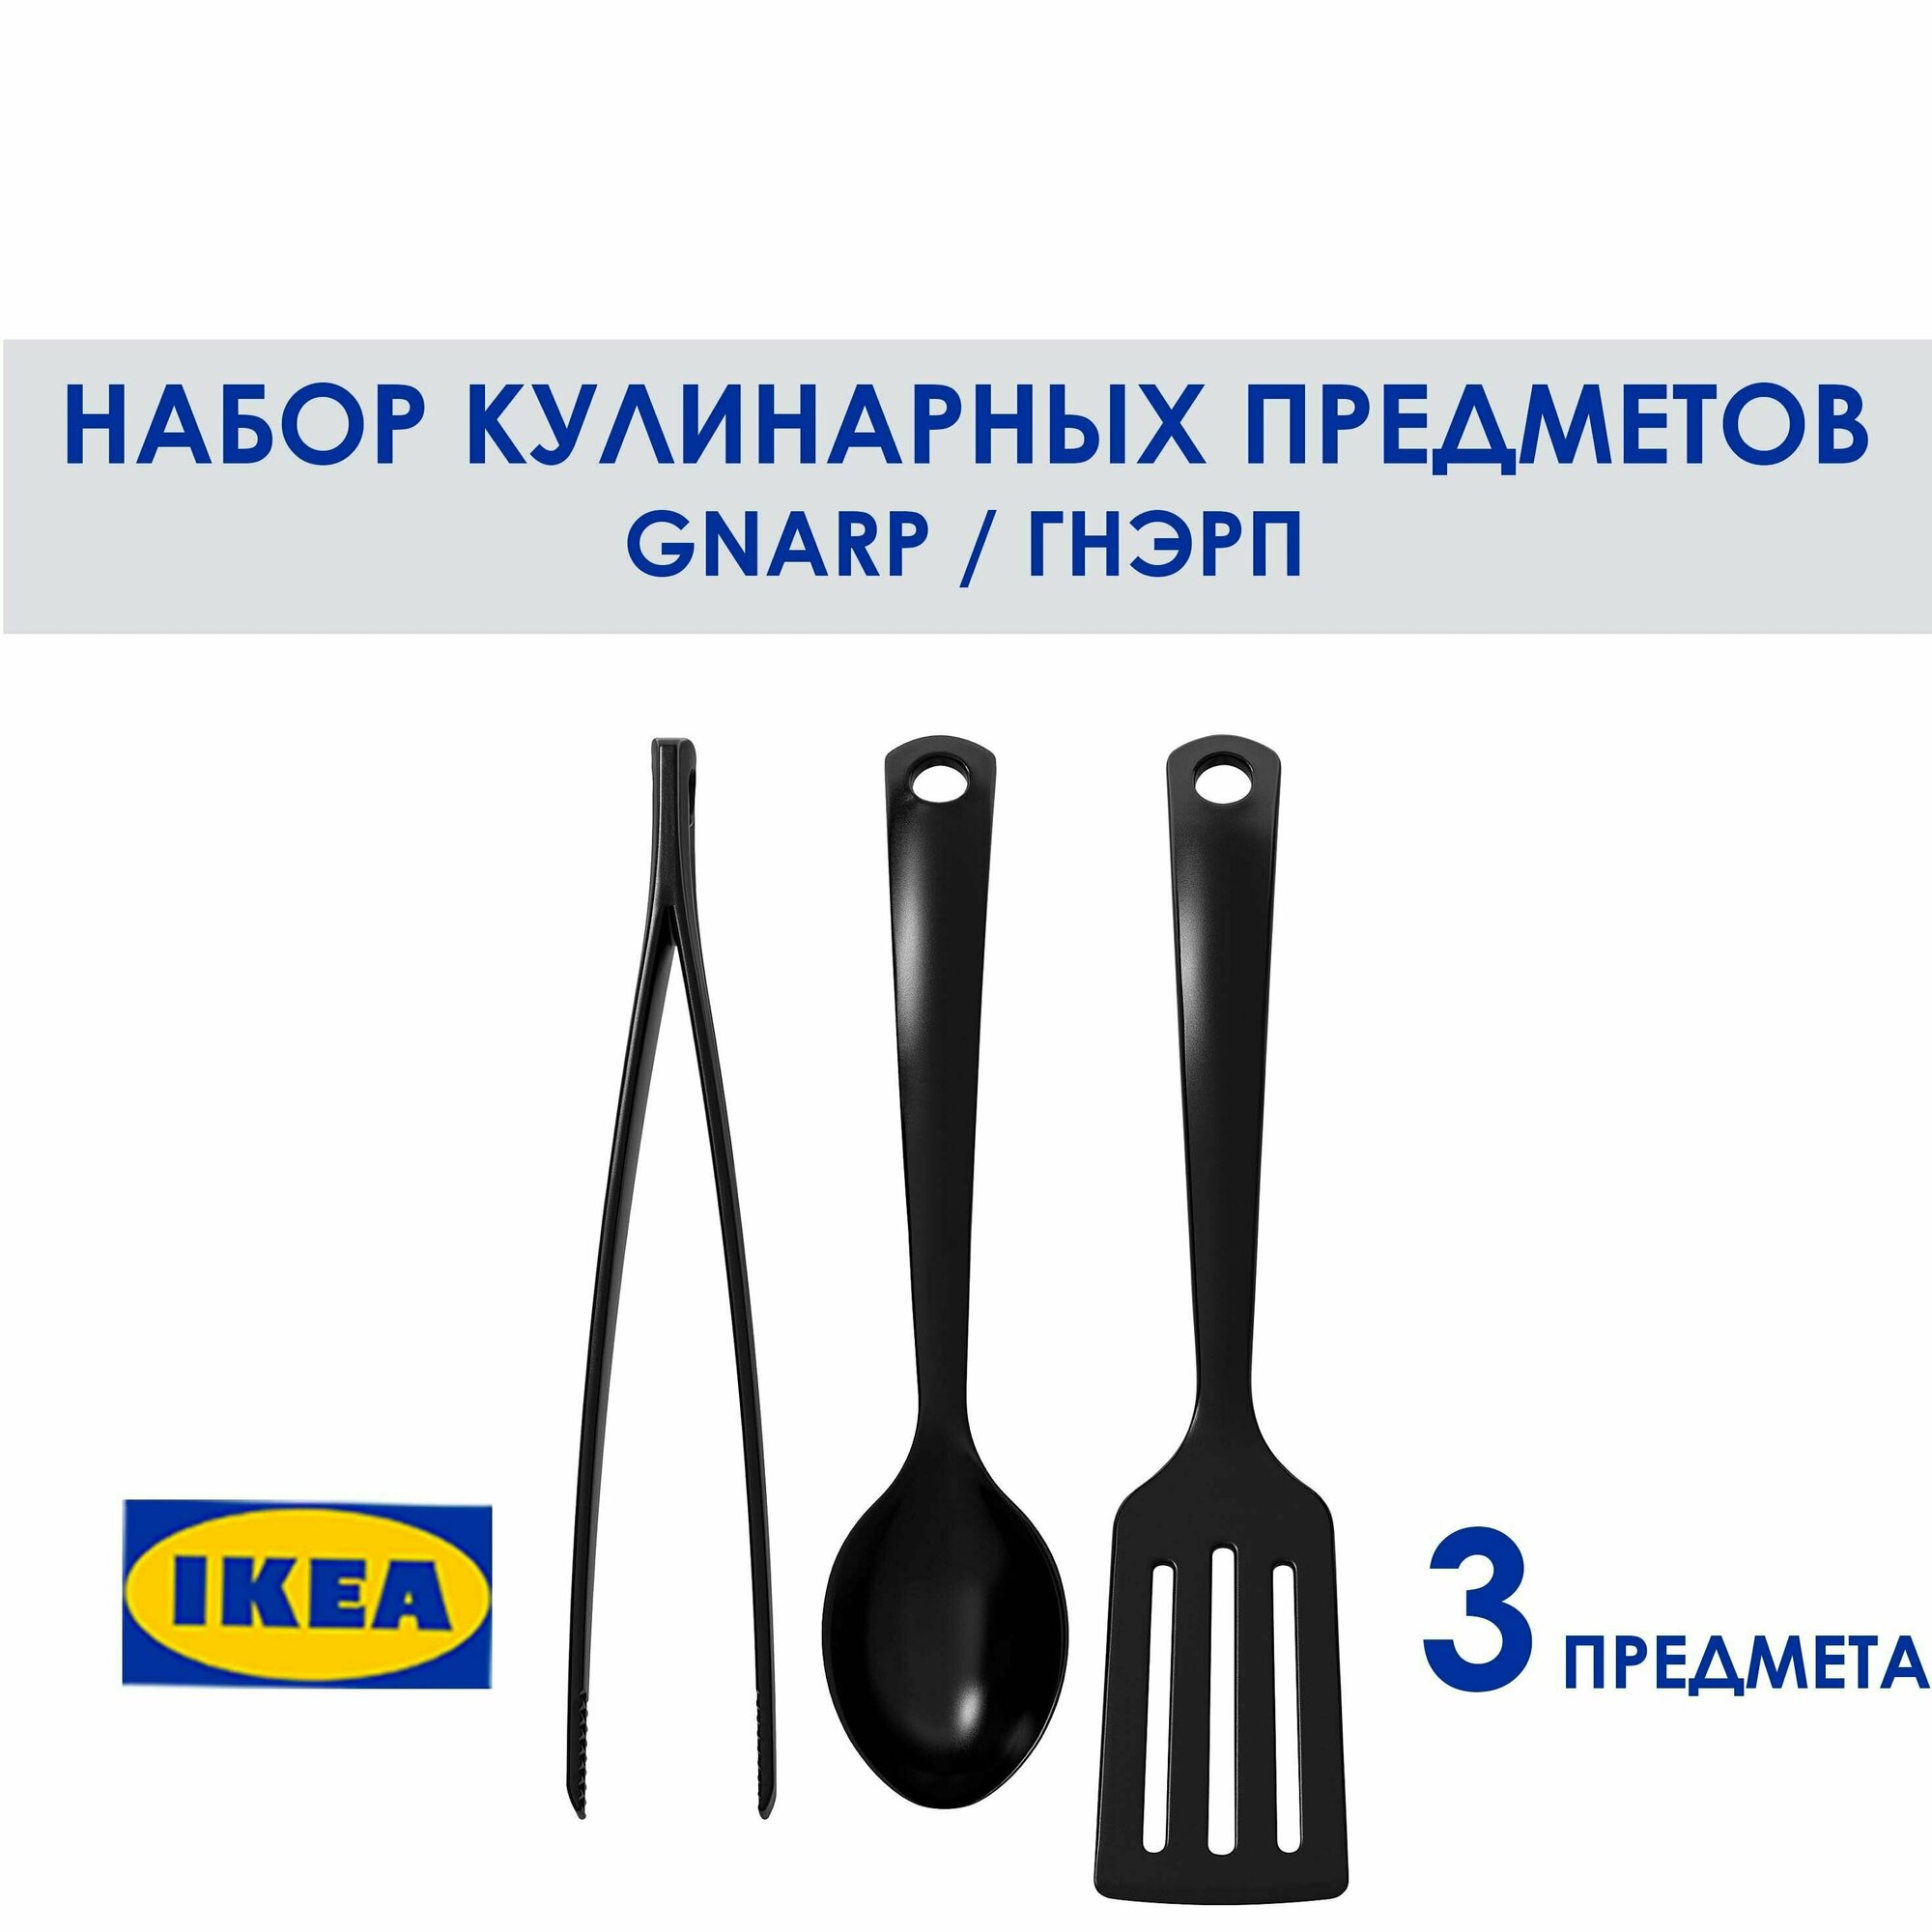 Набор кухонных аксессуаров GNARP икея, черный, 3 предмета